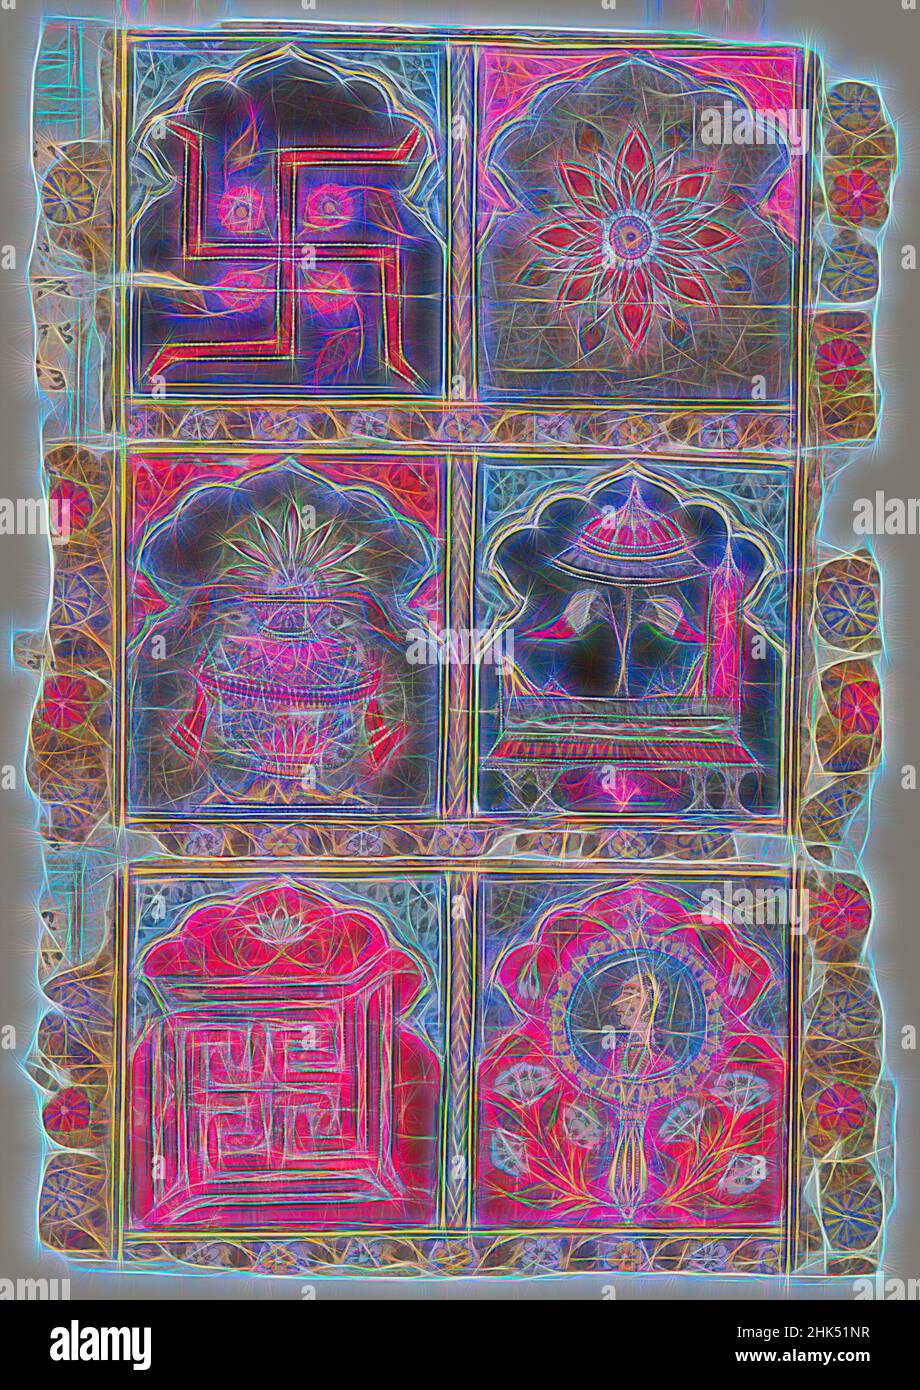 Inspiriert von Fragment eines Jain Vijnaptipatra, indisch, opakes Aquarell auf Papier, Rajasthan, Indien, ca. 1725-1750, Blatt: 12 1/2 x 8 5/8 Zoll, 31,8 x 21,9 cm, Ashtamangala, Bhadrasana, Darpana, Blumen, Einladung, Jain, Kalasha, Lotus, Mewar School, Spiegel, Mönche, Nandyavarta, Papier, Sonnenschirm, Neu gestaltet von Artotop. Klassische Kunst neu erfunden mit einem modernen Twist. Design von warmen fröhlichen Leuchten der Helligkeit und Lichtstrahl Strahlkraft. Fotografie inspiriert von Surrealismus und Futurismus, umarmt dynamische Energie der modernen Technologie, Bewegung, Geschwindigkeit und Kultur zu revolutionieren Stockfoto